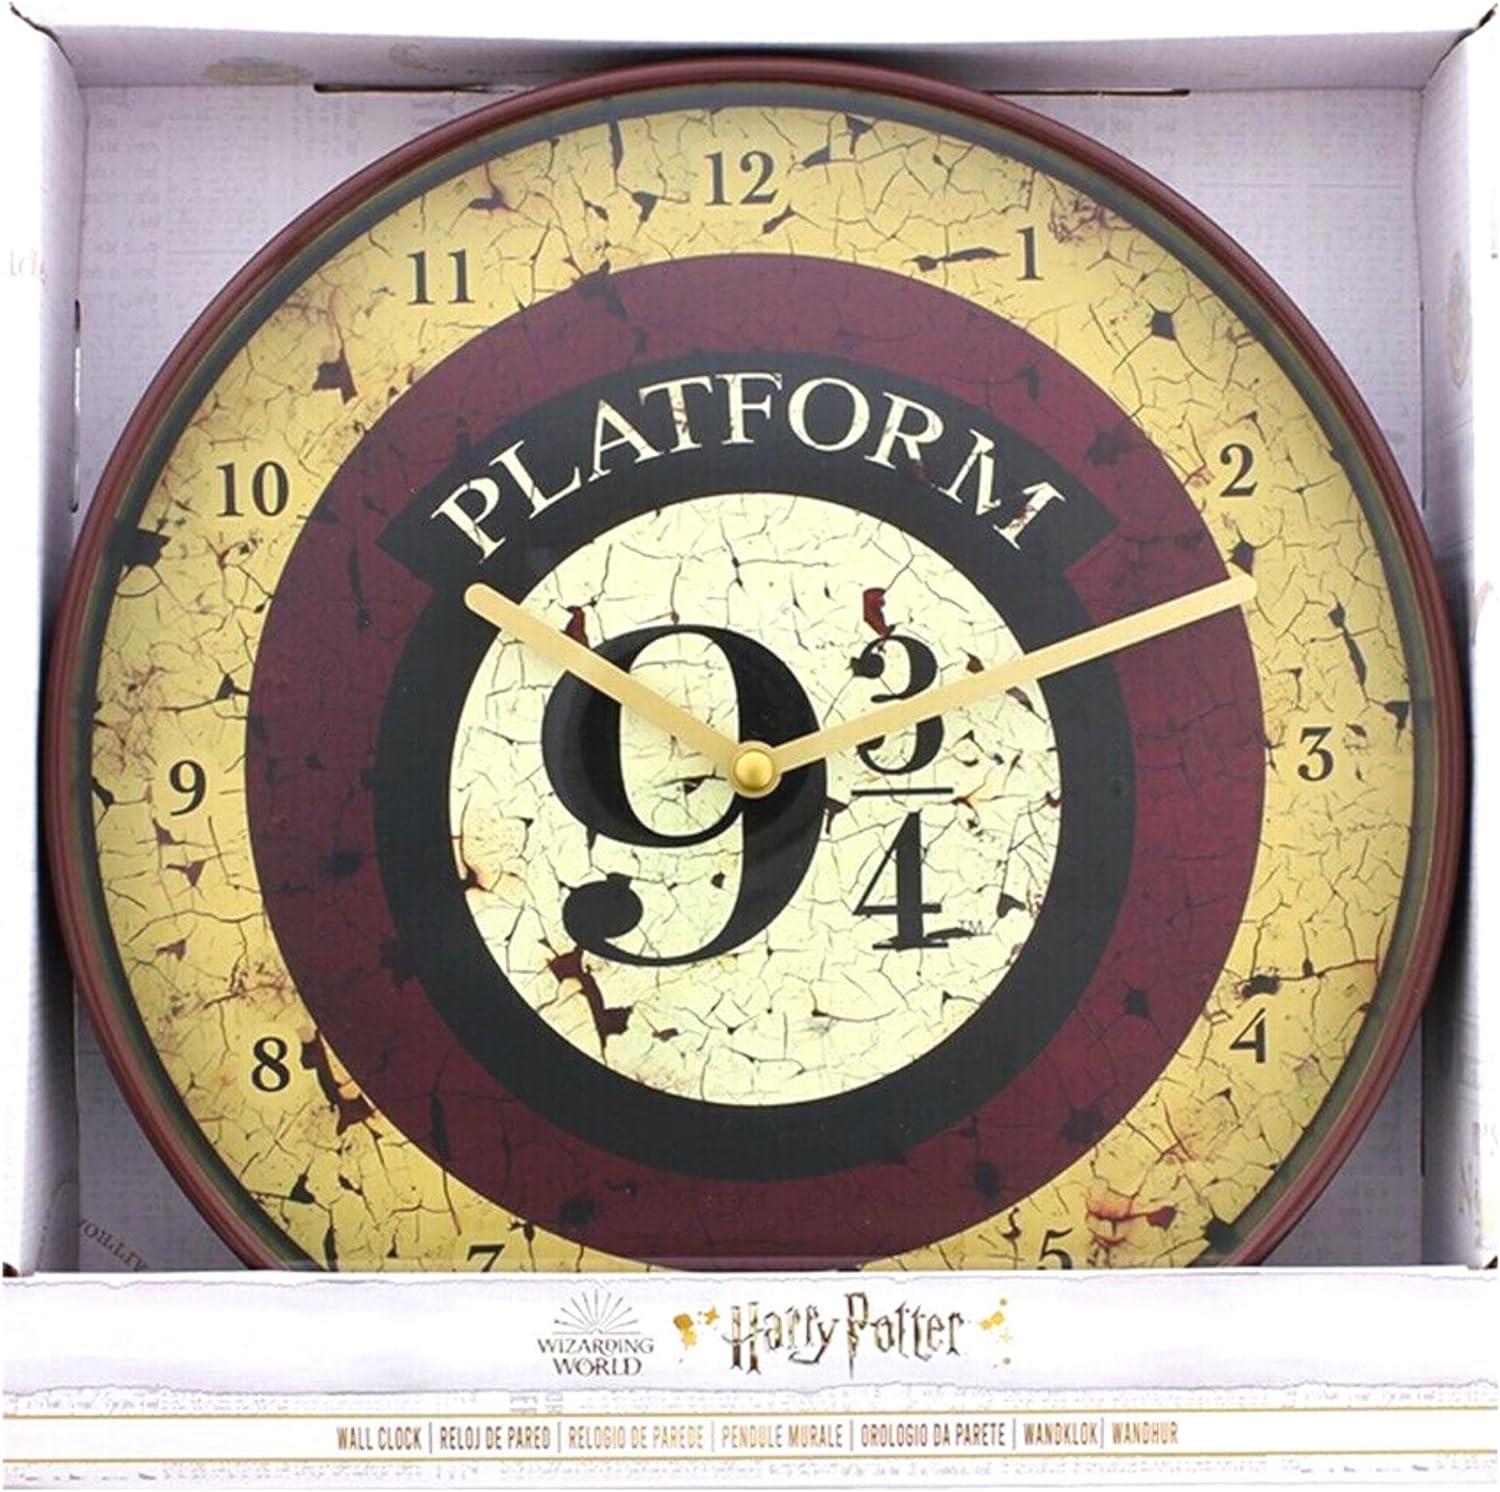 Harry Potter 2 Piece Gift Set - 10" 25cm Platform 9 3/4 Wall Clock & Gryffindor 07 Seeker 600ml Ceramic Stein - Toptoys2u